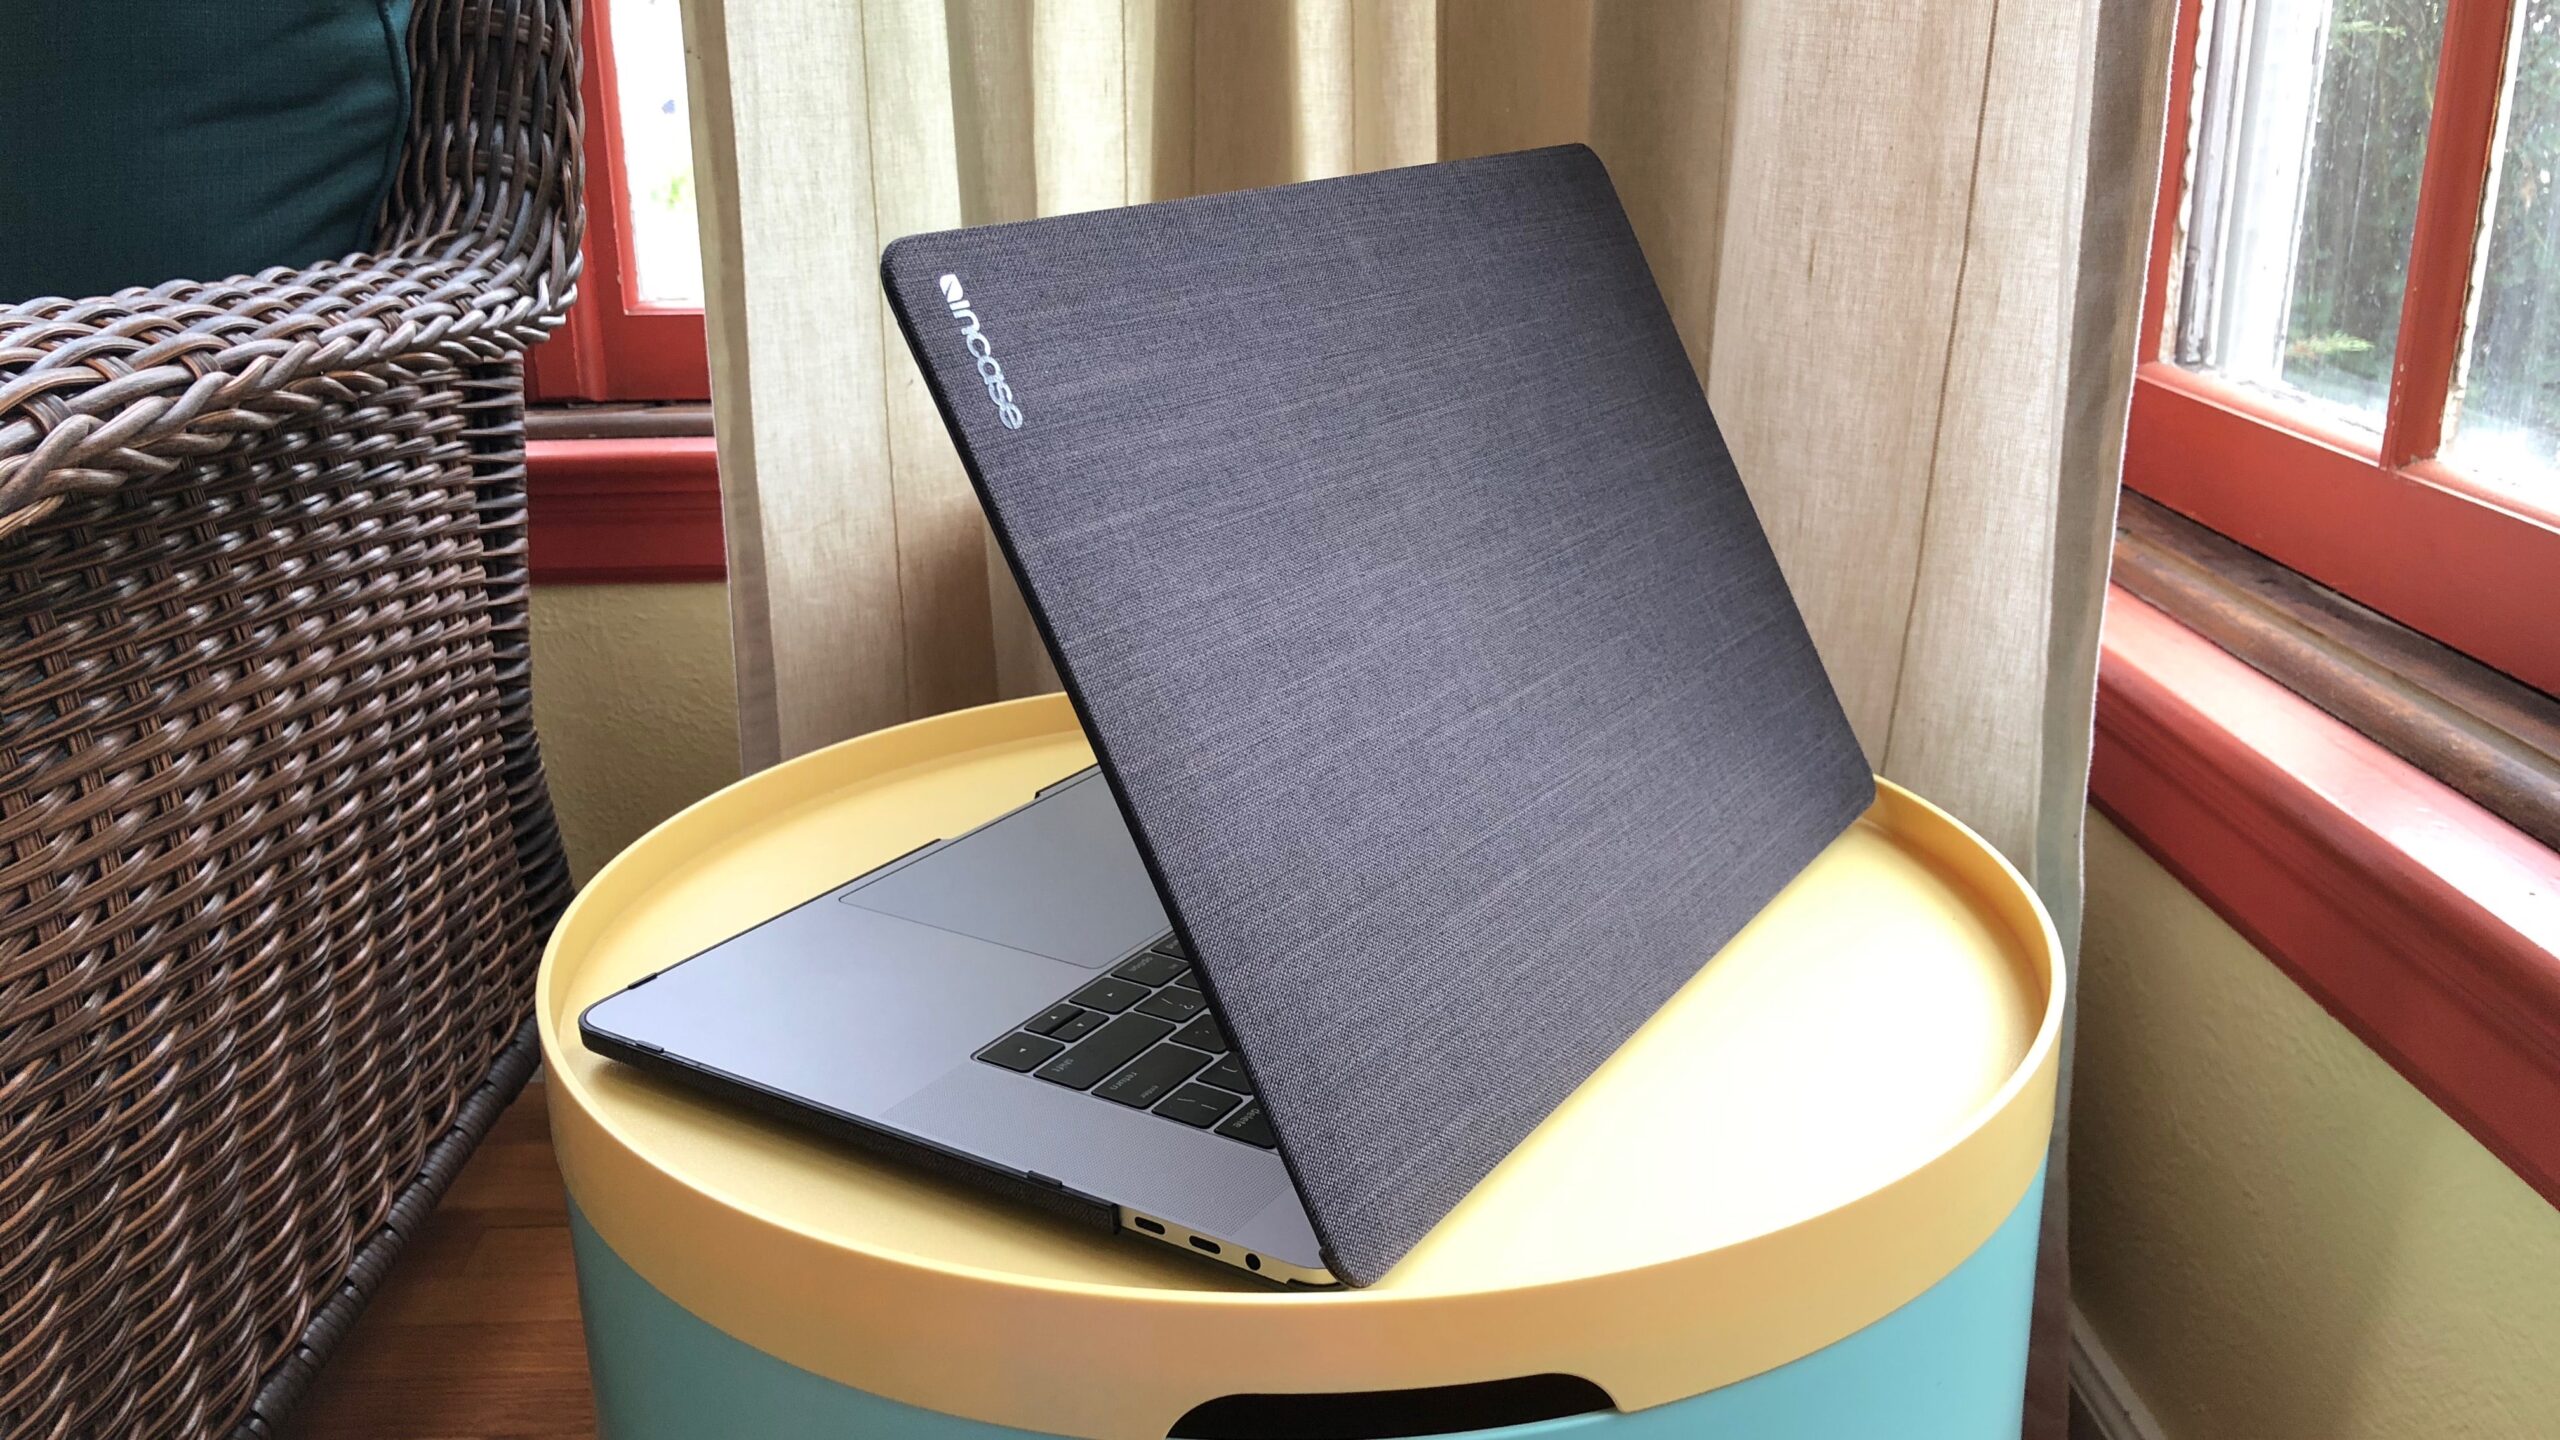 Accessoires MacBook : les indispensables ! - MacManiack Blog